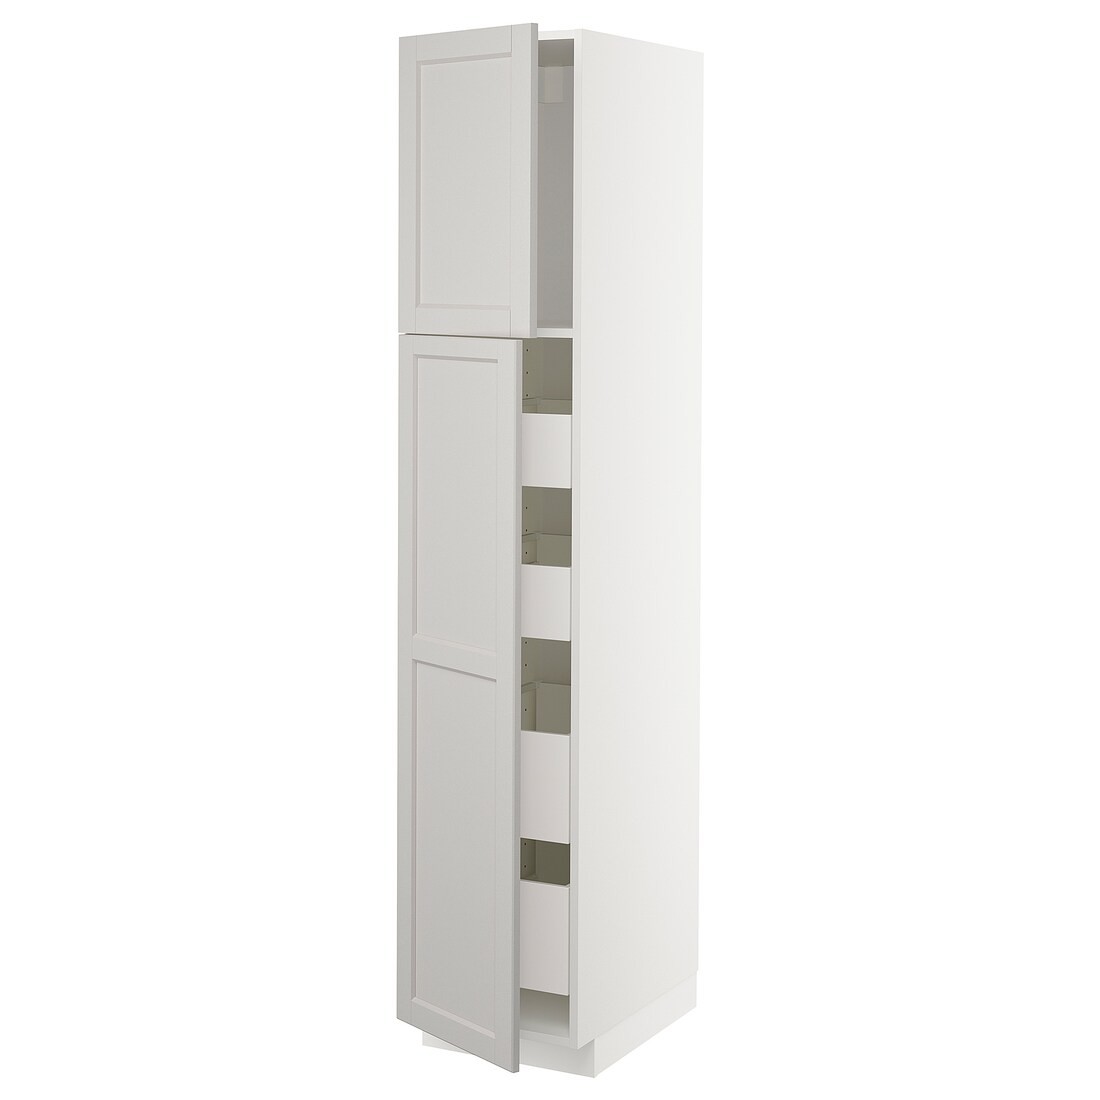 IKEA METOD МЕТОД / MAXIMERA МАКСИМЕРА Шкаф высокий 2 двери / 4 ящика, белый / Lerhyttan светло-серый, 40x60x200 см 69469556 | 694.695.56